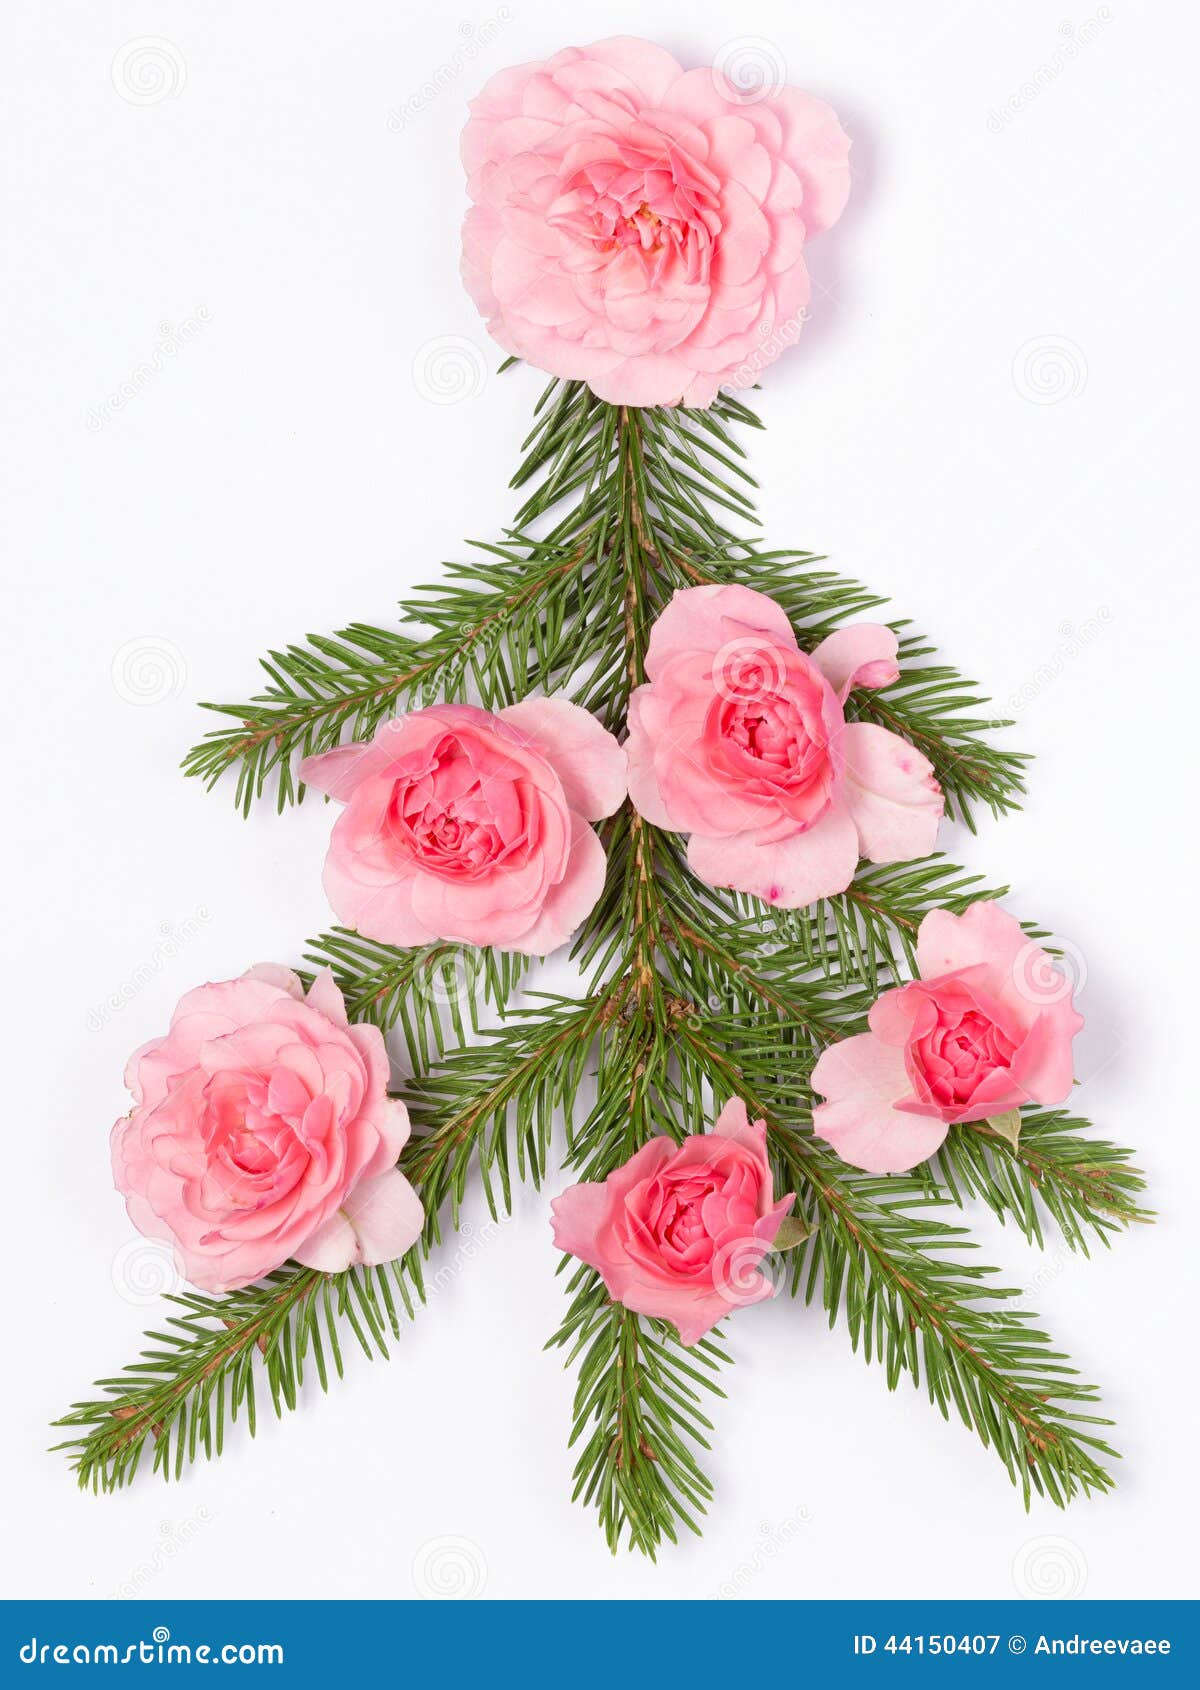 Te regalo una rosa - Página 15 Rbol-de-navidad-adornado-con-las-rosas-44150407